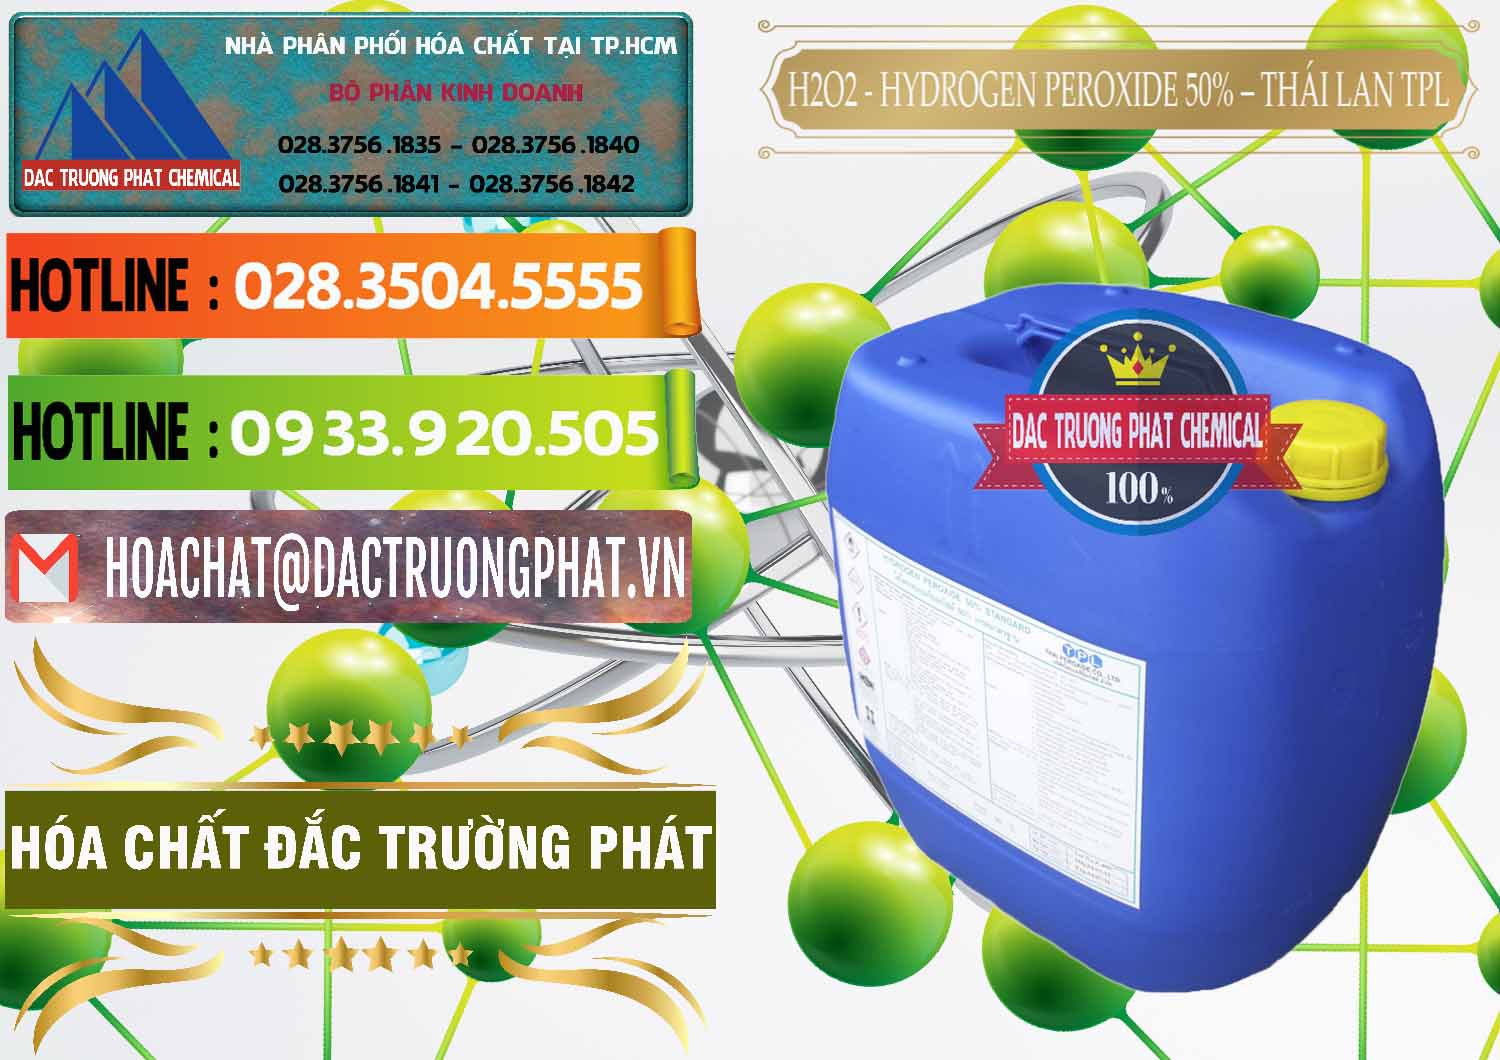 Cty bán & phân phối H2O2 - Hydrogen Peroxide 50% Thái Lan TPL - 0076 - Chuyên phân phối và cung ứng hóa chất tại TP.HCM - cungcaphoachat.com.vn